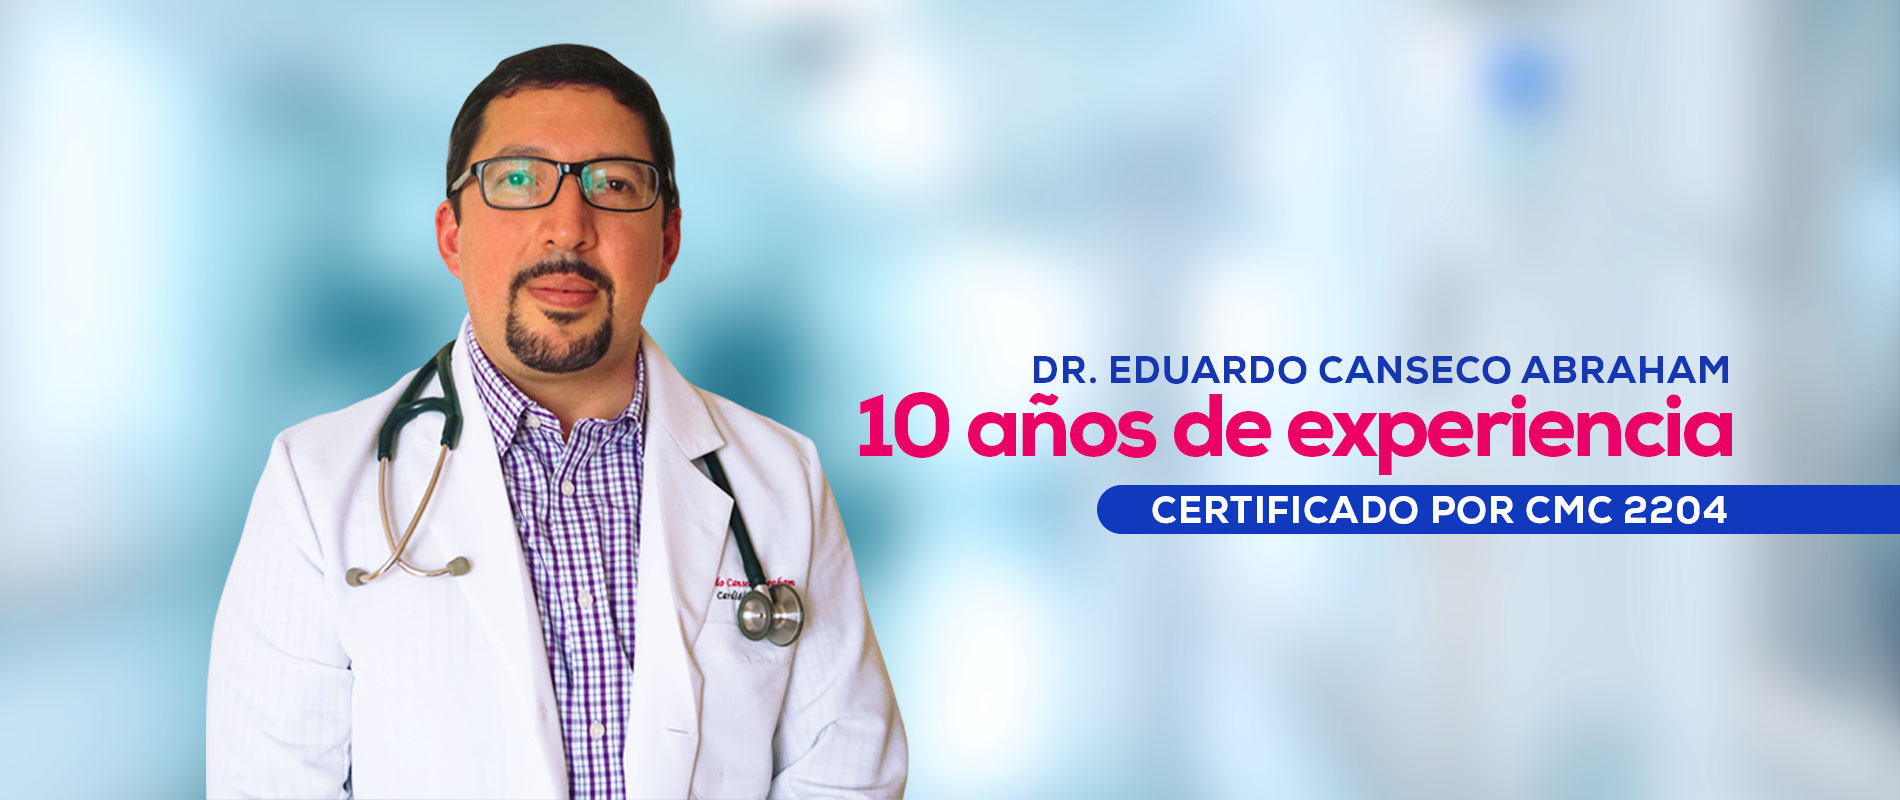 Cardiologo En Tijuana Ecocardiograma Dr Eduardo Canseco Abraham 5312